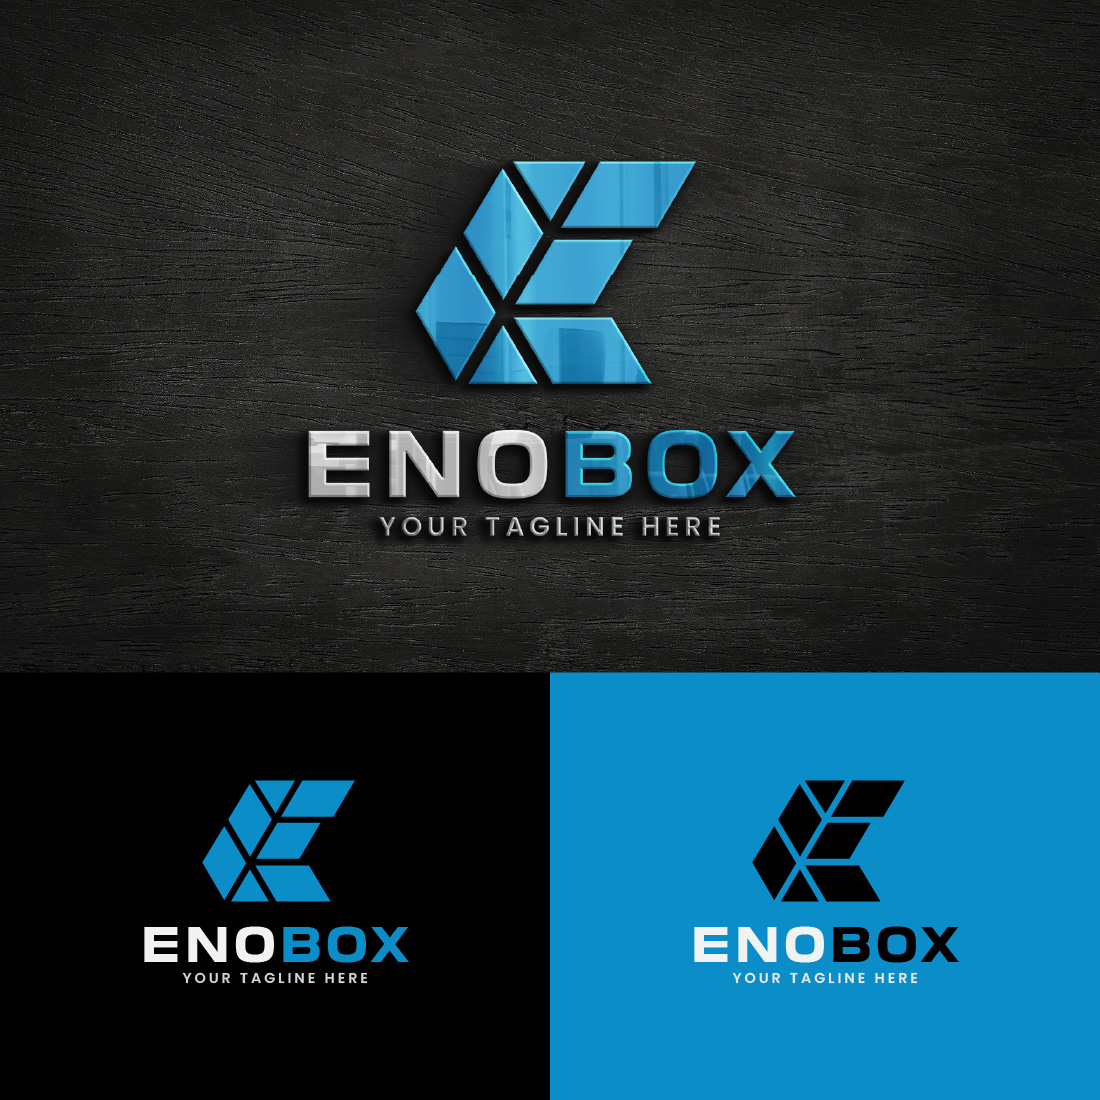 Square Box E Letter Logo Design Template cover image.